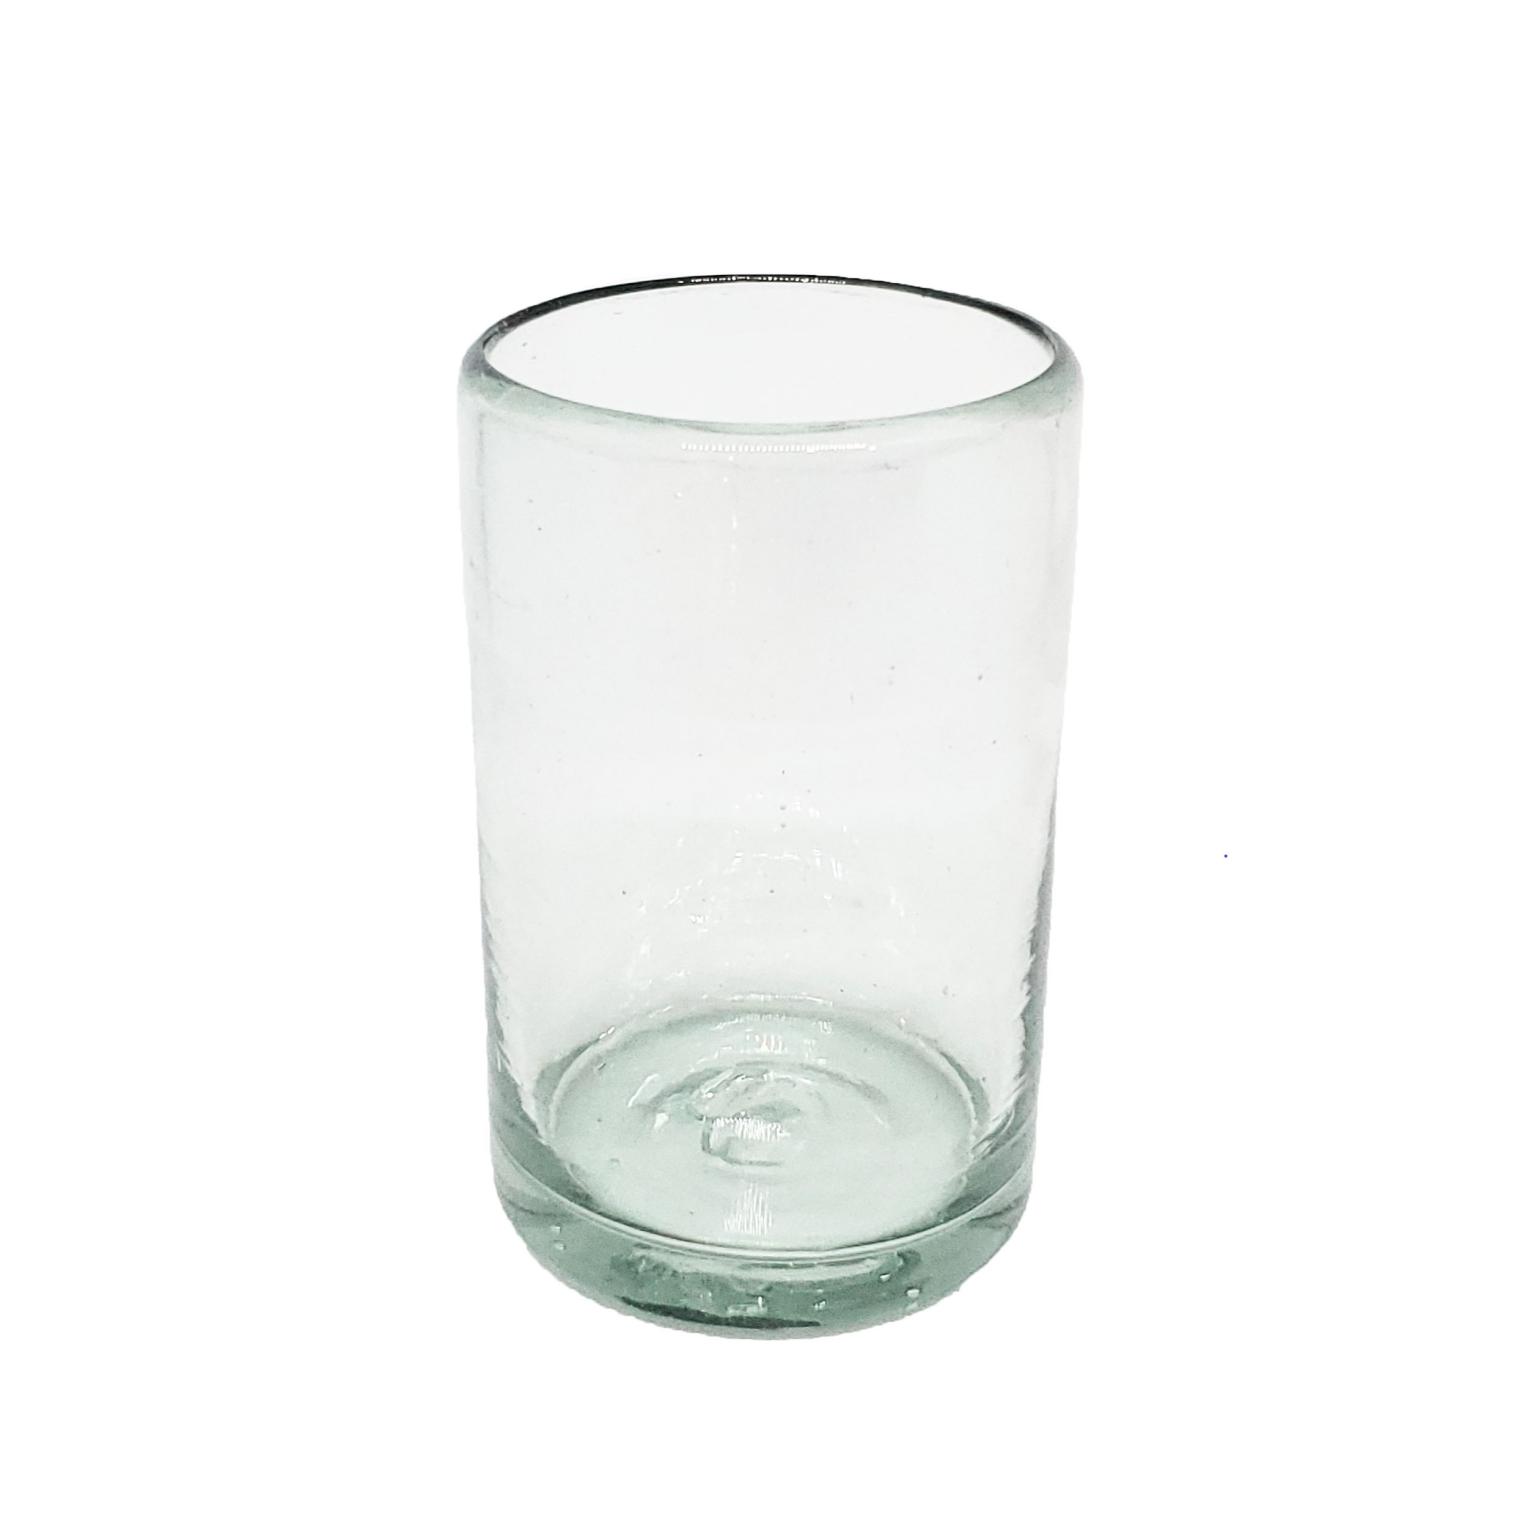 Vasos de Vidrio Soplado al Mayoreo / vasos Jugo 9oz Transparentes / Éstos artesanales vasos le darán un toque clásico a su bebida favorita.